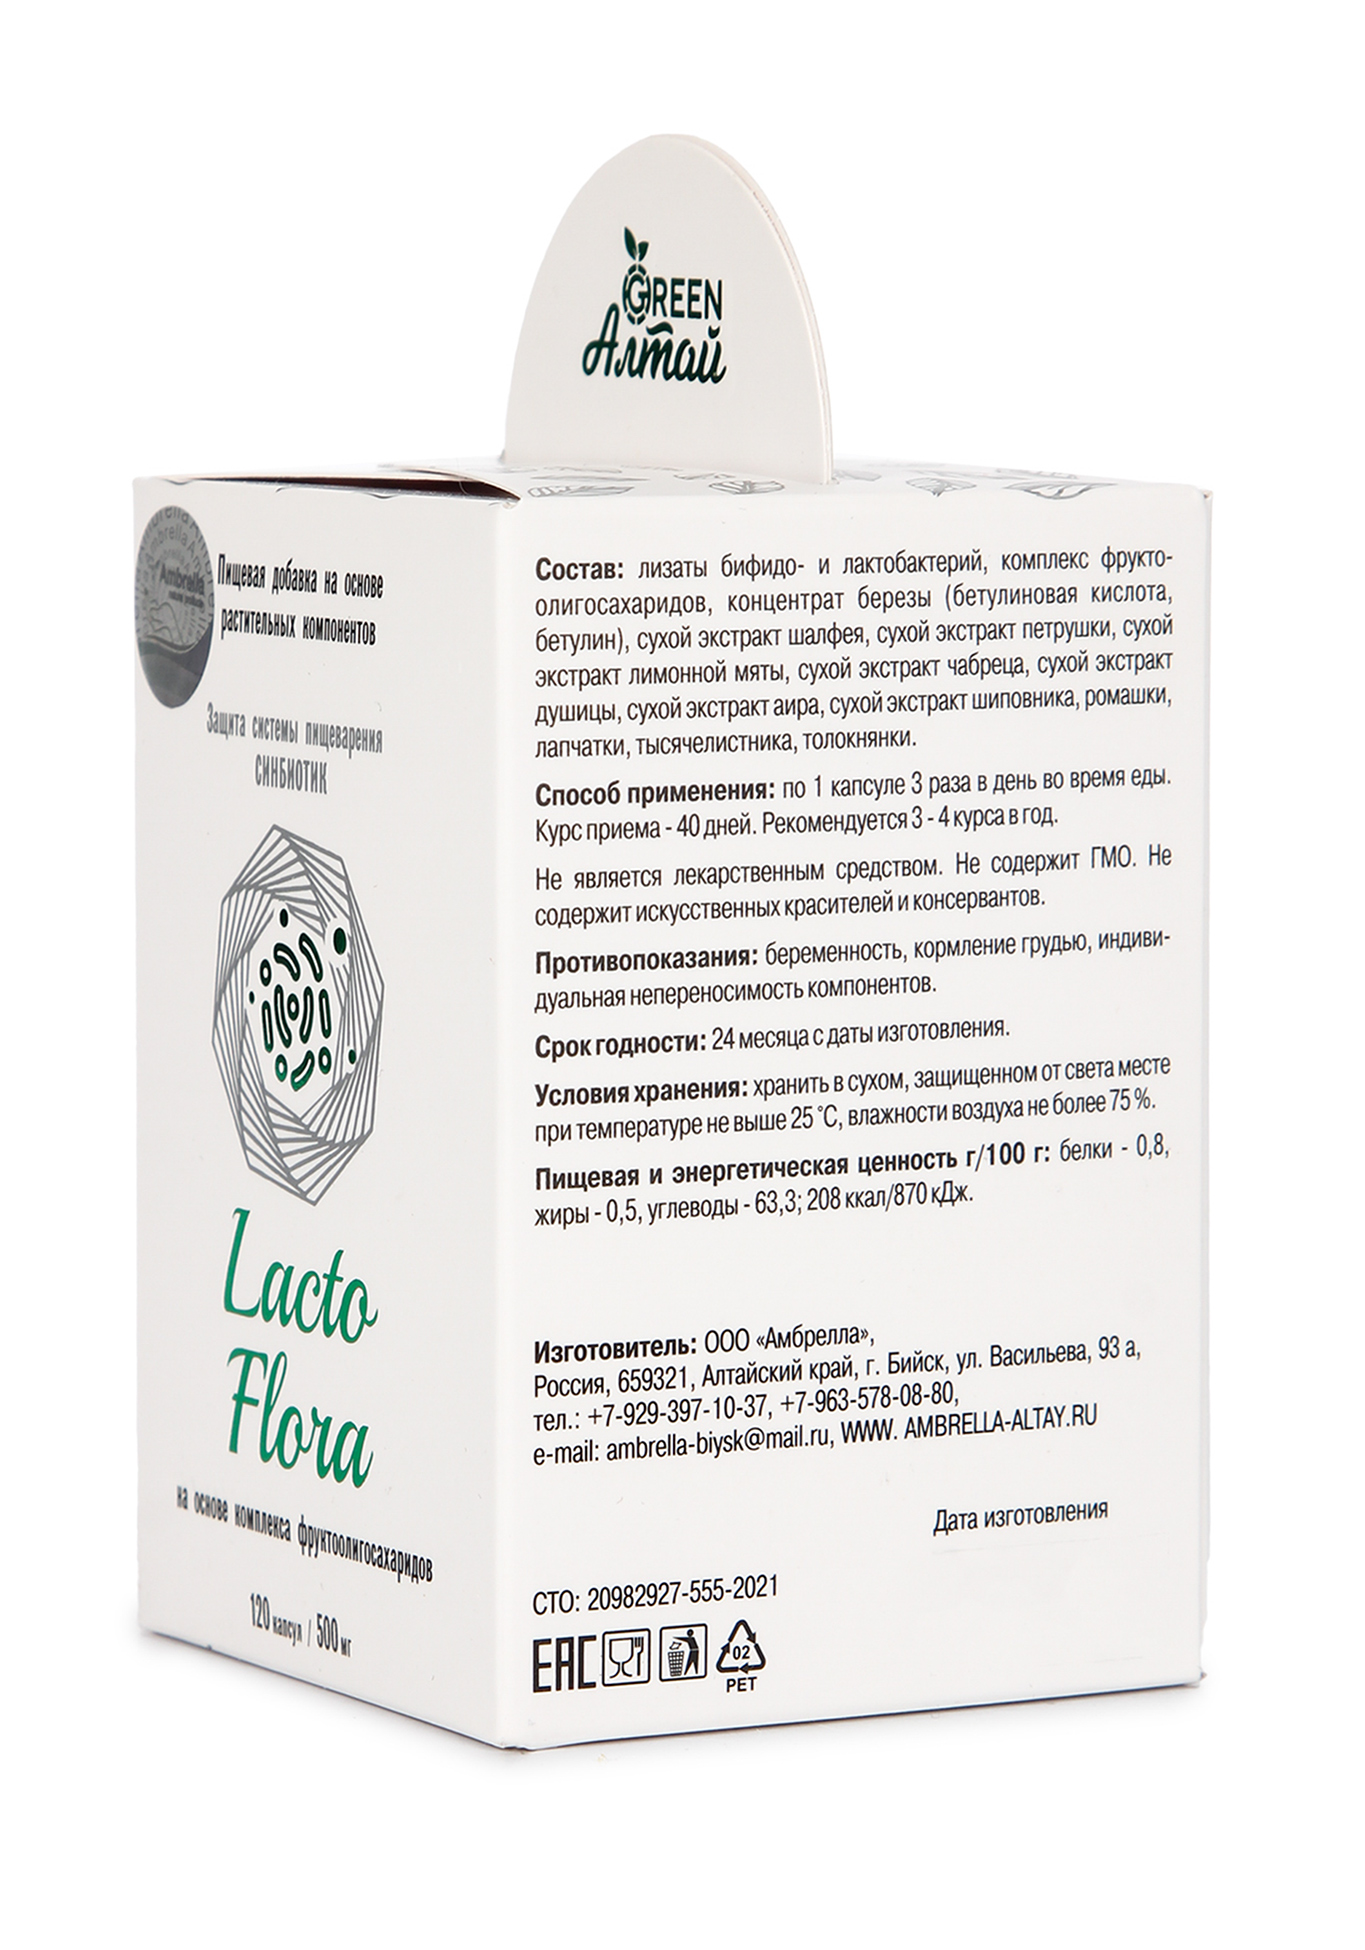 Lacto Flora "Защита пищеварения,синбиотик" Green Алтай - фото 3